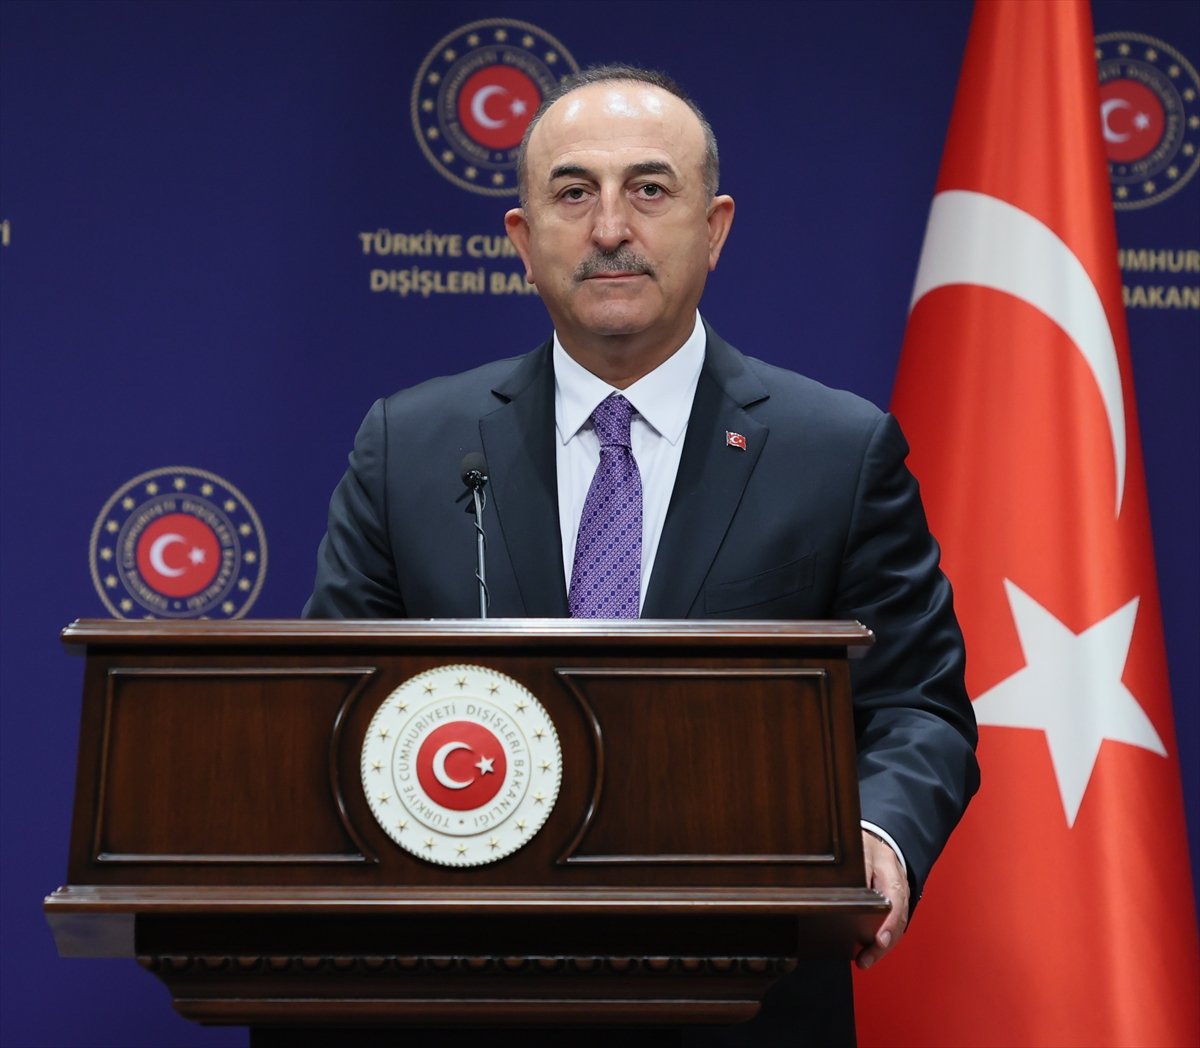 Mevlüt Çavuşoğlu: Türkiye, Afrika'nın istikrarını önemsiyor